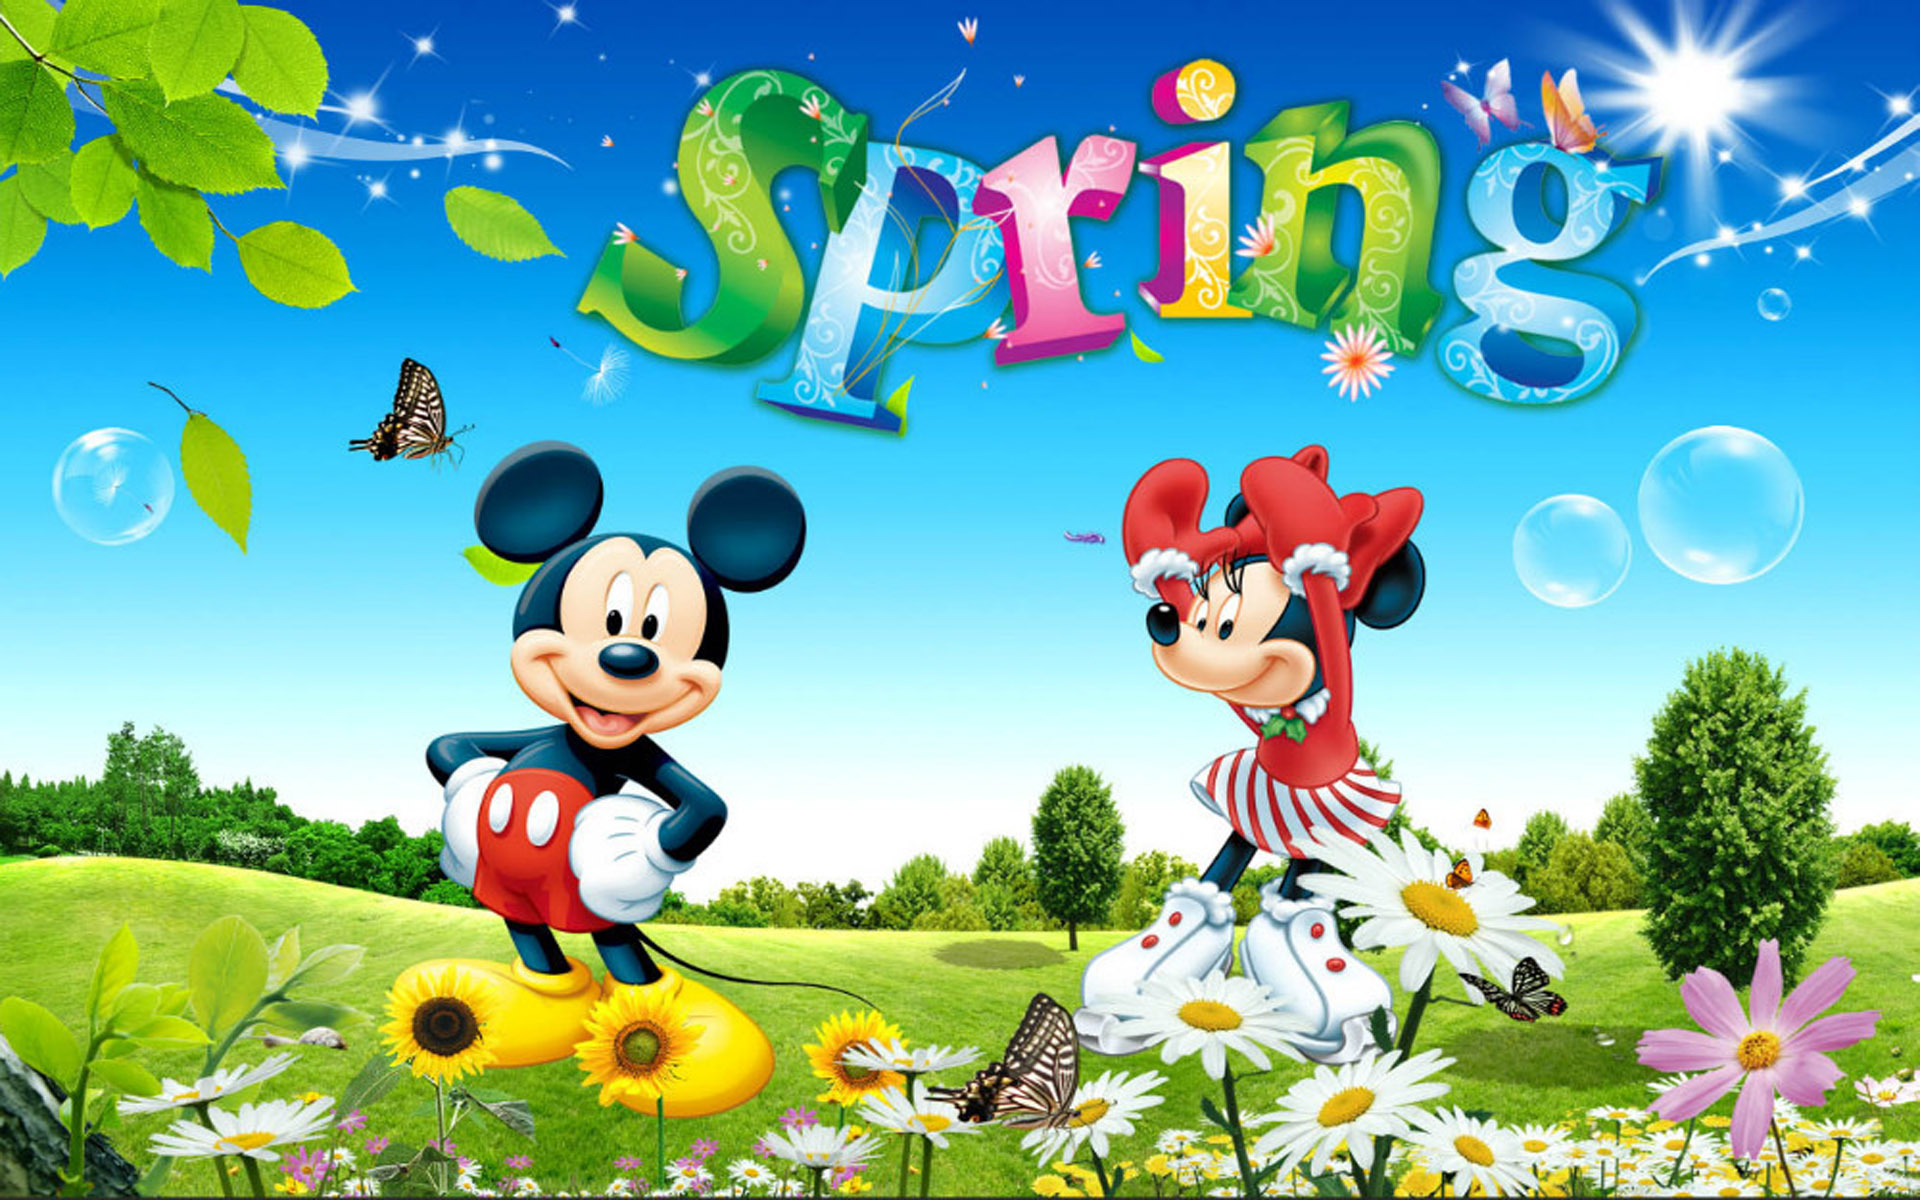 Mickey Mini Spring Game Dancing Flowers Flight Of Butterflies Green Grass Blue Sky Wallpaper HD For Deskx1200, Wallpaper13.com